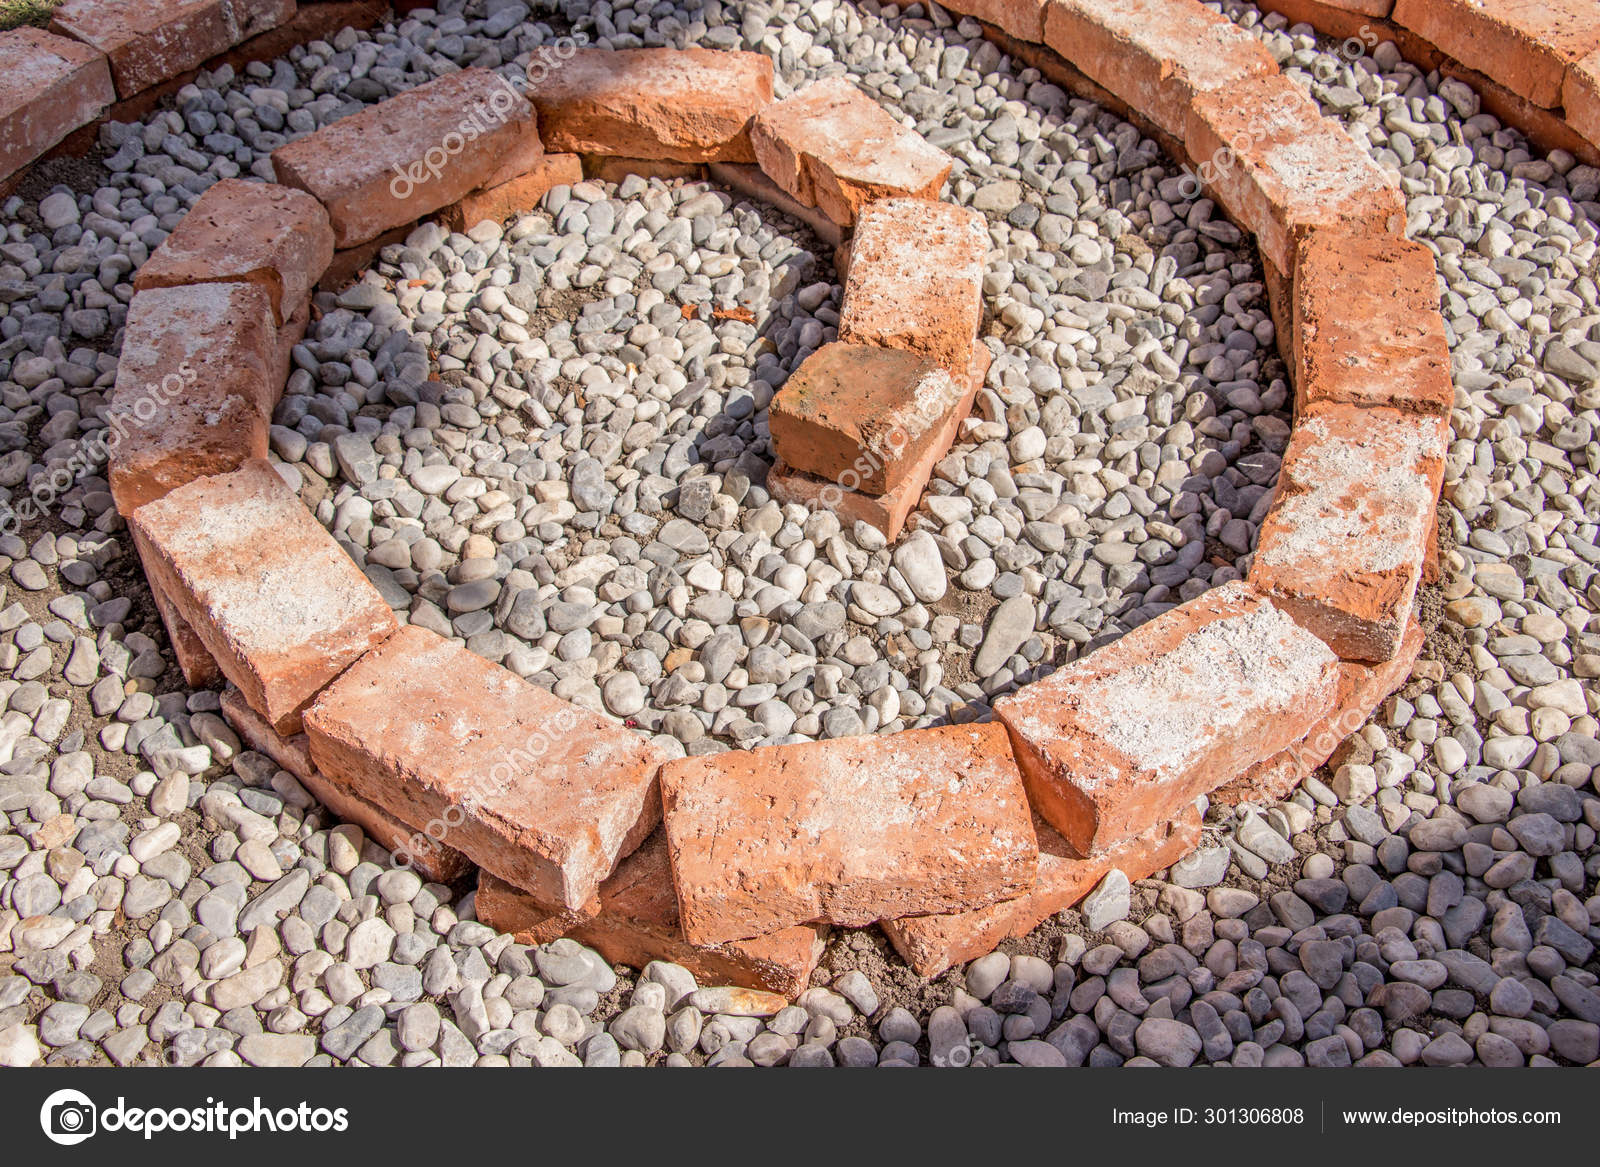 depositphotos_301306808-stock-photo-spiral-herb-garden-pebbles.jpg